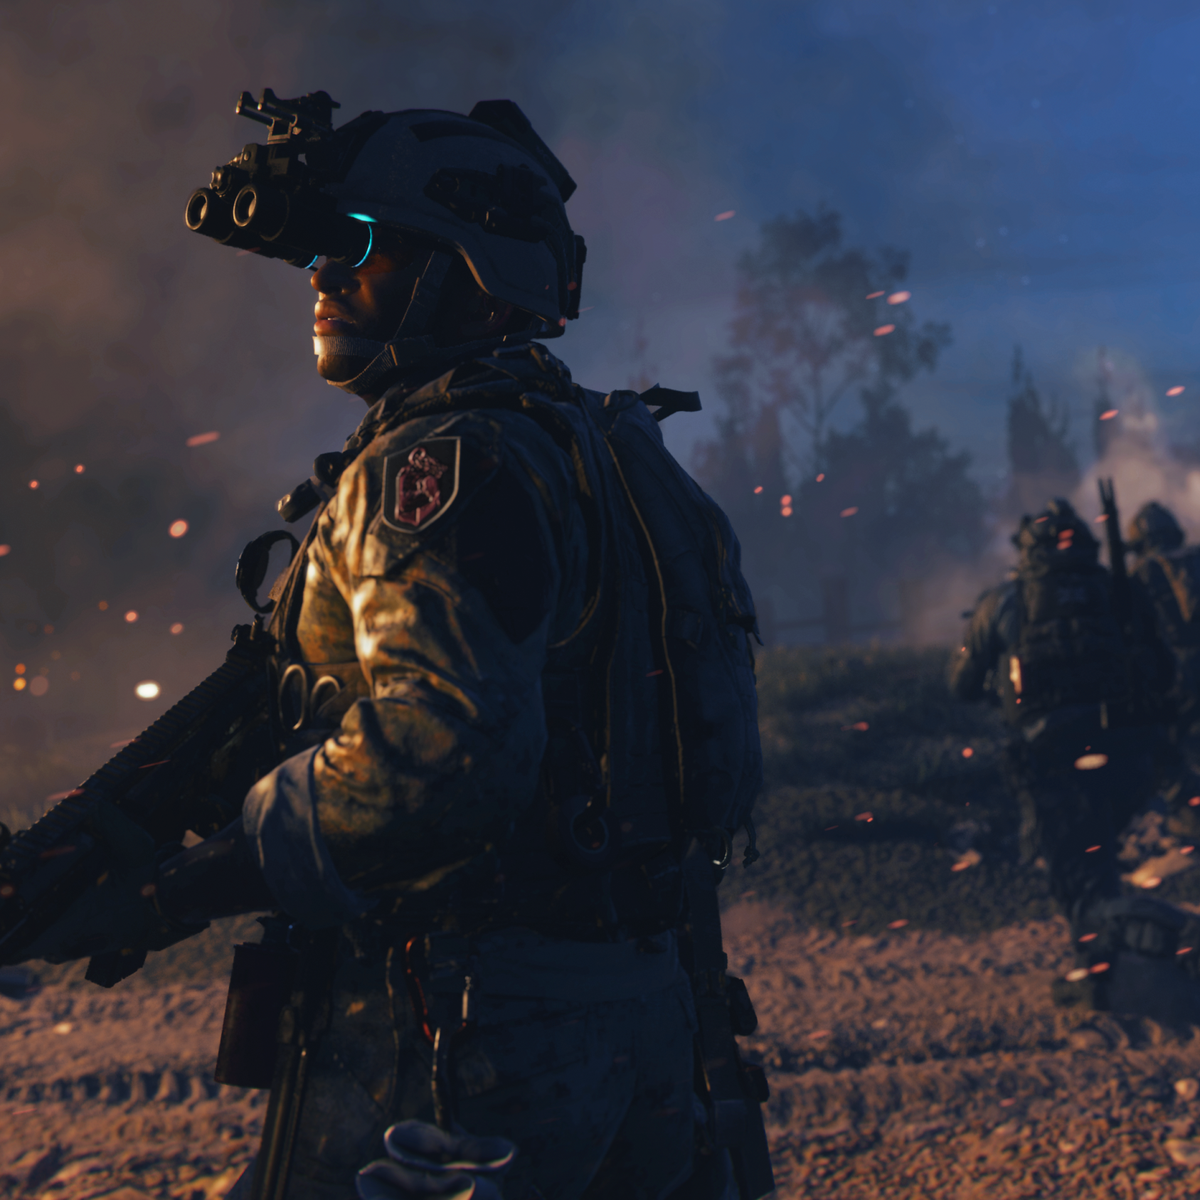 Call of Duty: Modern Warfare II traz Task Force 141 de volta